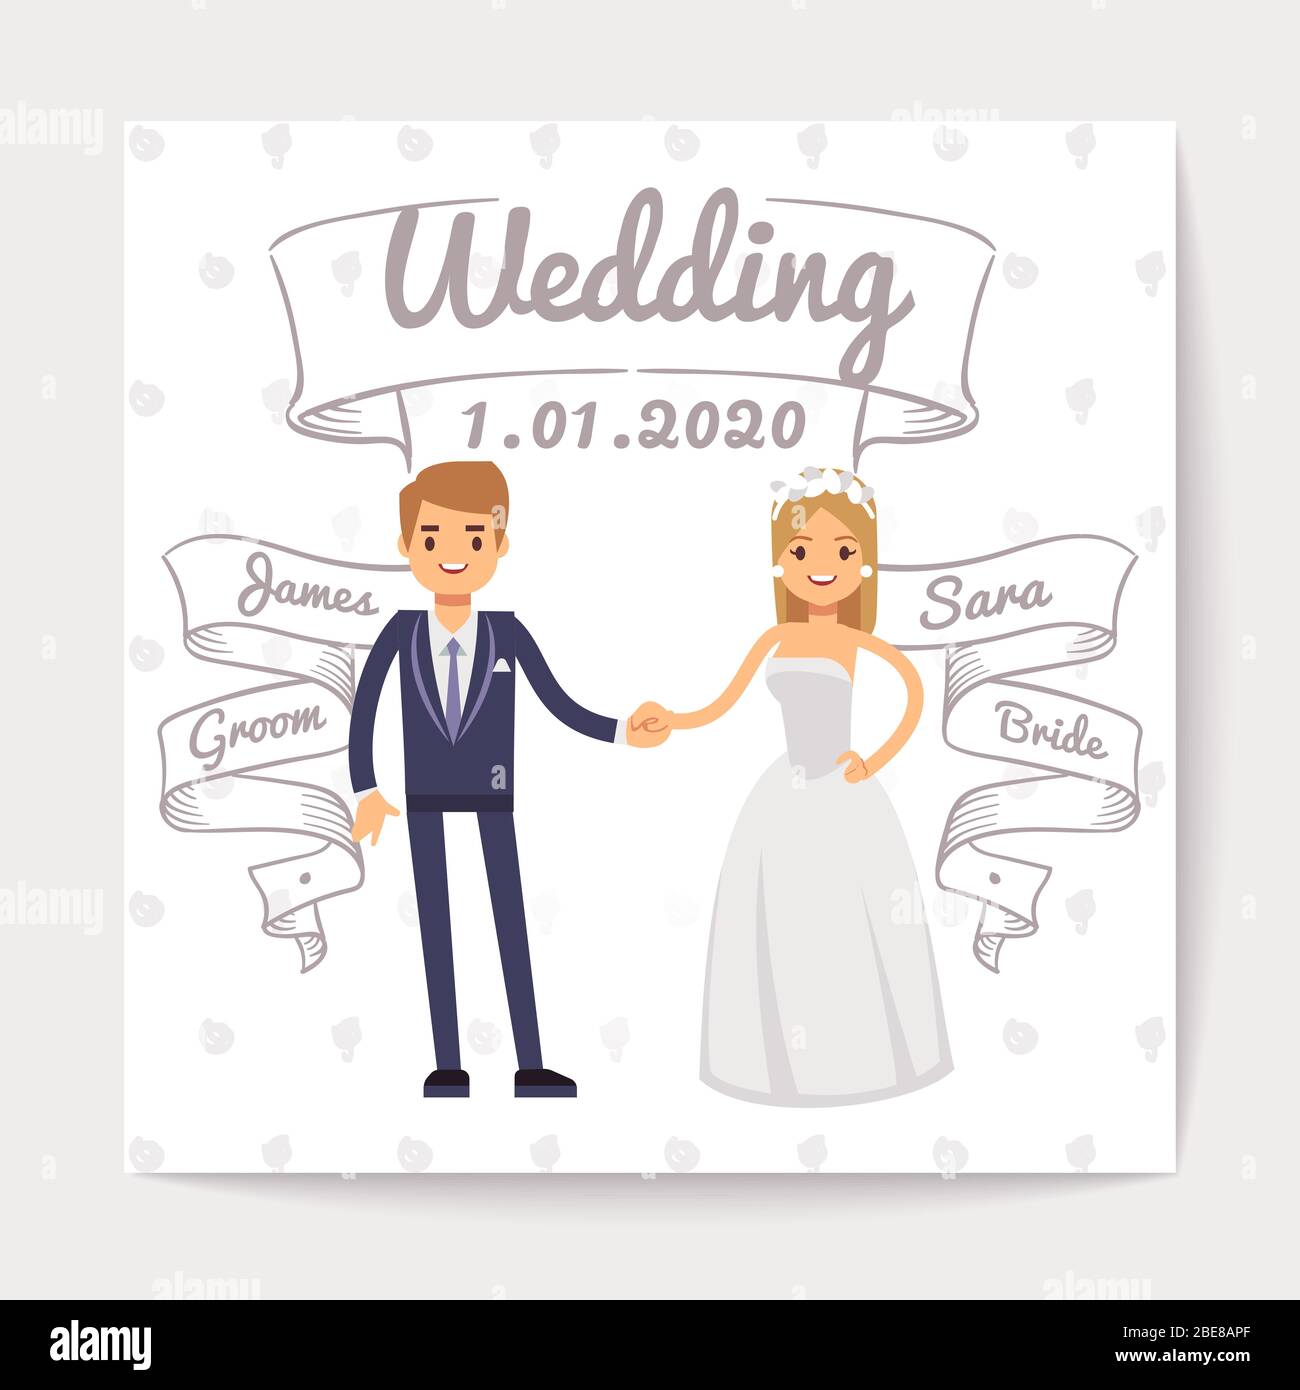 Hochzeit Einladungskarte mit gerade verheirateten jungen Paar und ihnen Namen auf Hand gezeichnete Bänder Vektor-Vorlage. Hochzeit Einladung Paar Frau und Mann Illustration Stock Vektor